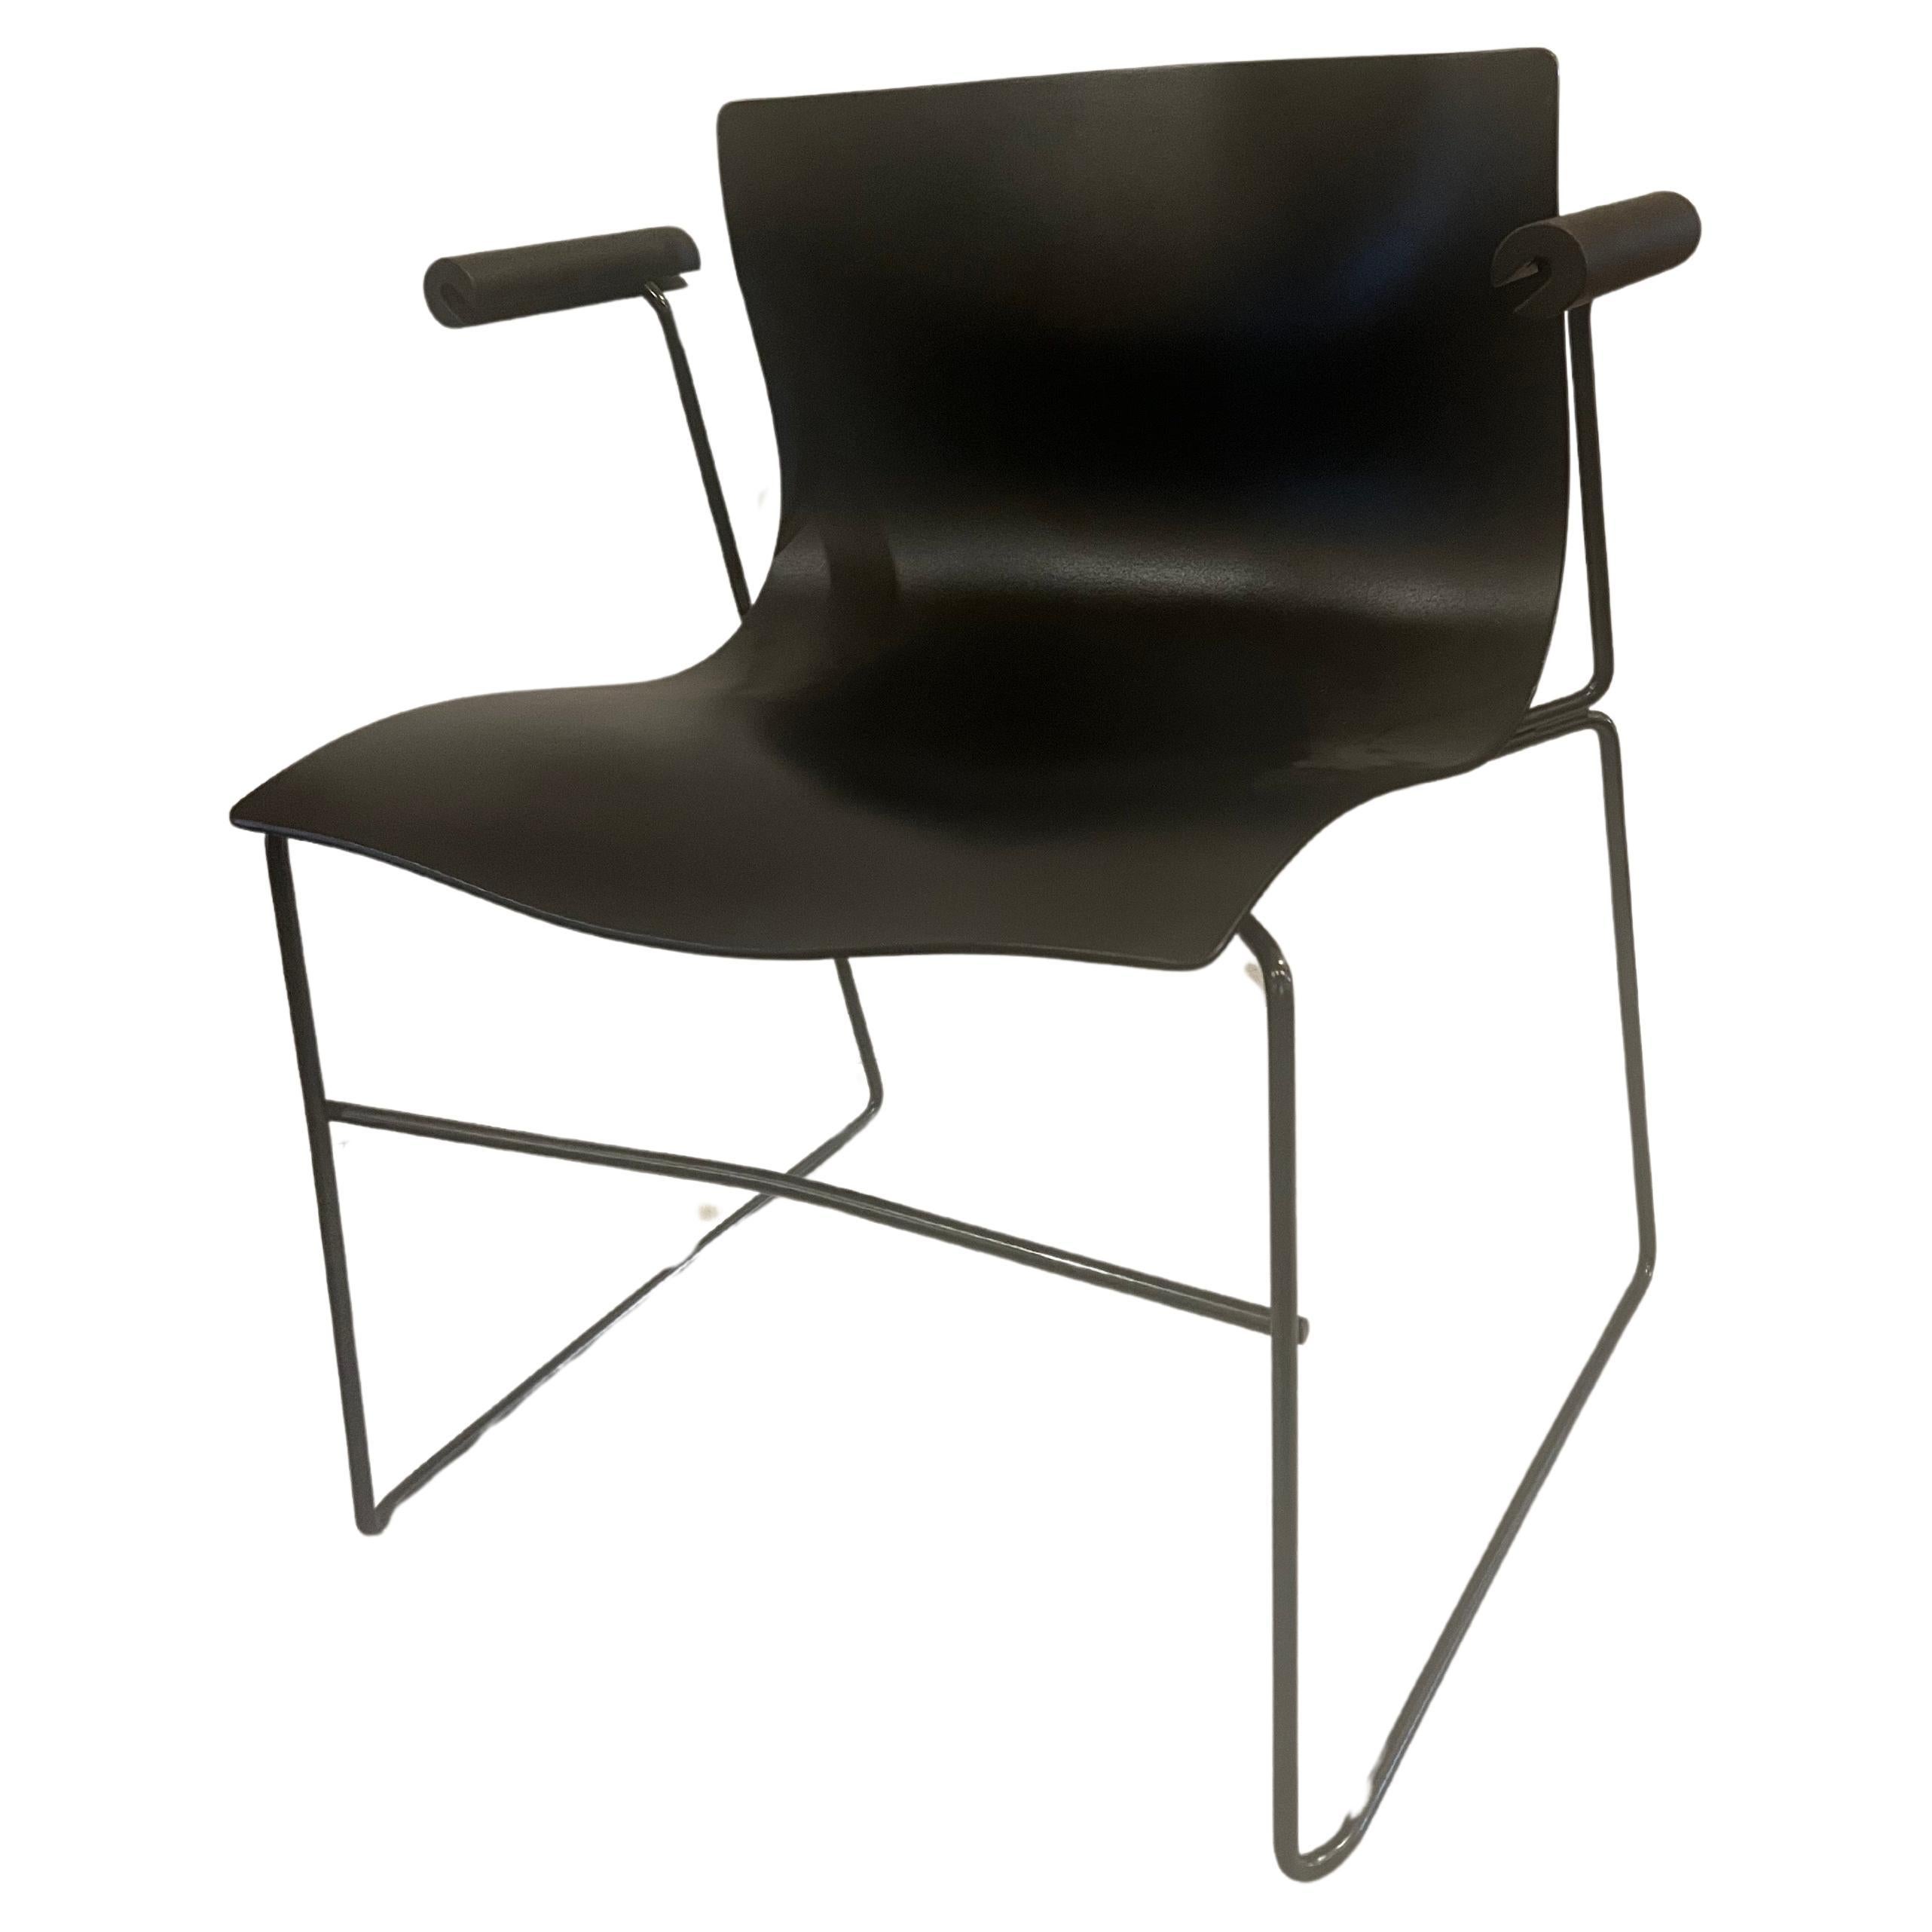 Ein großes Paar Sessel von Massimo Vignelli für Knoll entworfen, circa 1983, für Knoll Studio in gutem Zustand, schwarz auf schwarz die Sitze sind sehr sauber diese Stühle sind schön und bequem. Diese Stühle sind stapelbar, um sie zu lagern oder zu